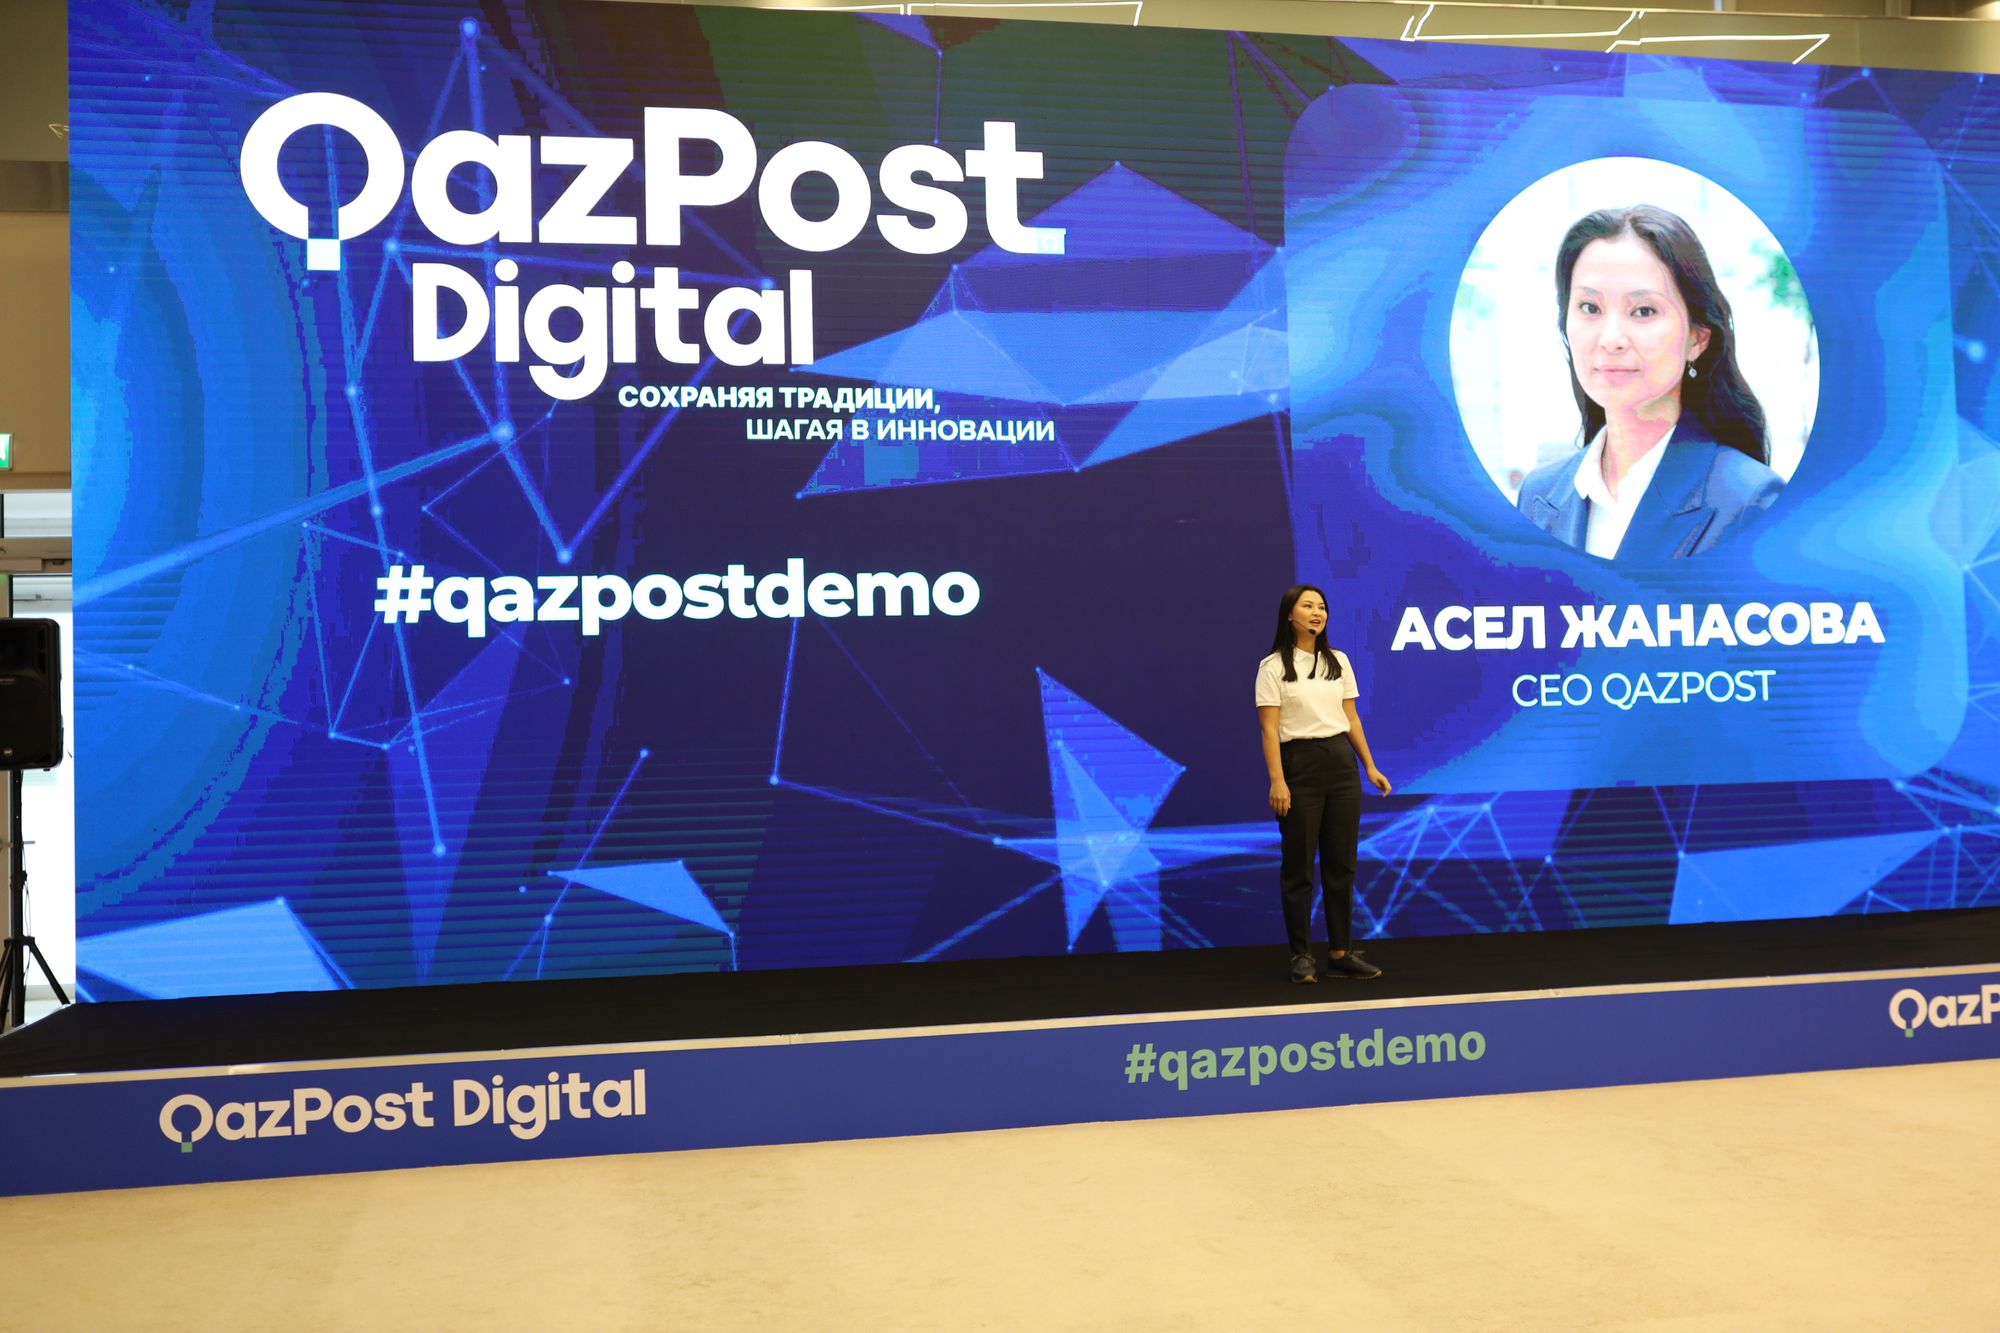 Цифровые проекты Qazpost Digital представили в Казахстане